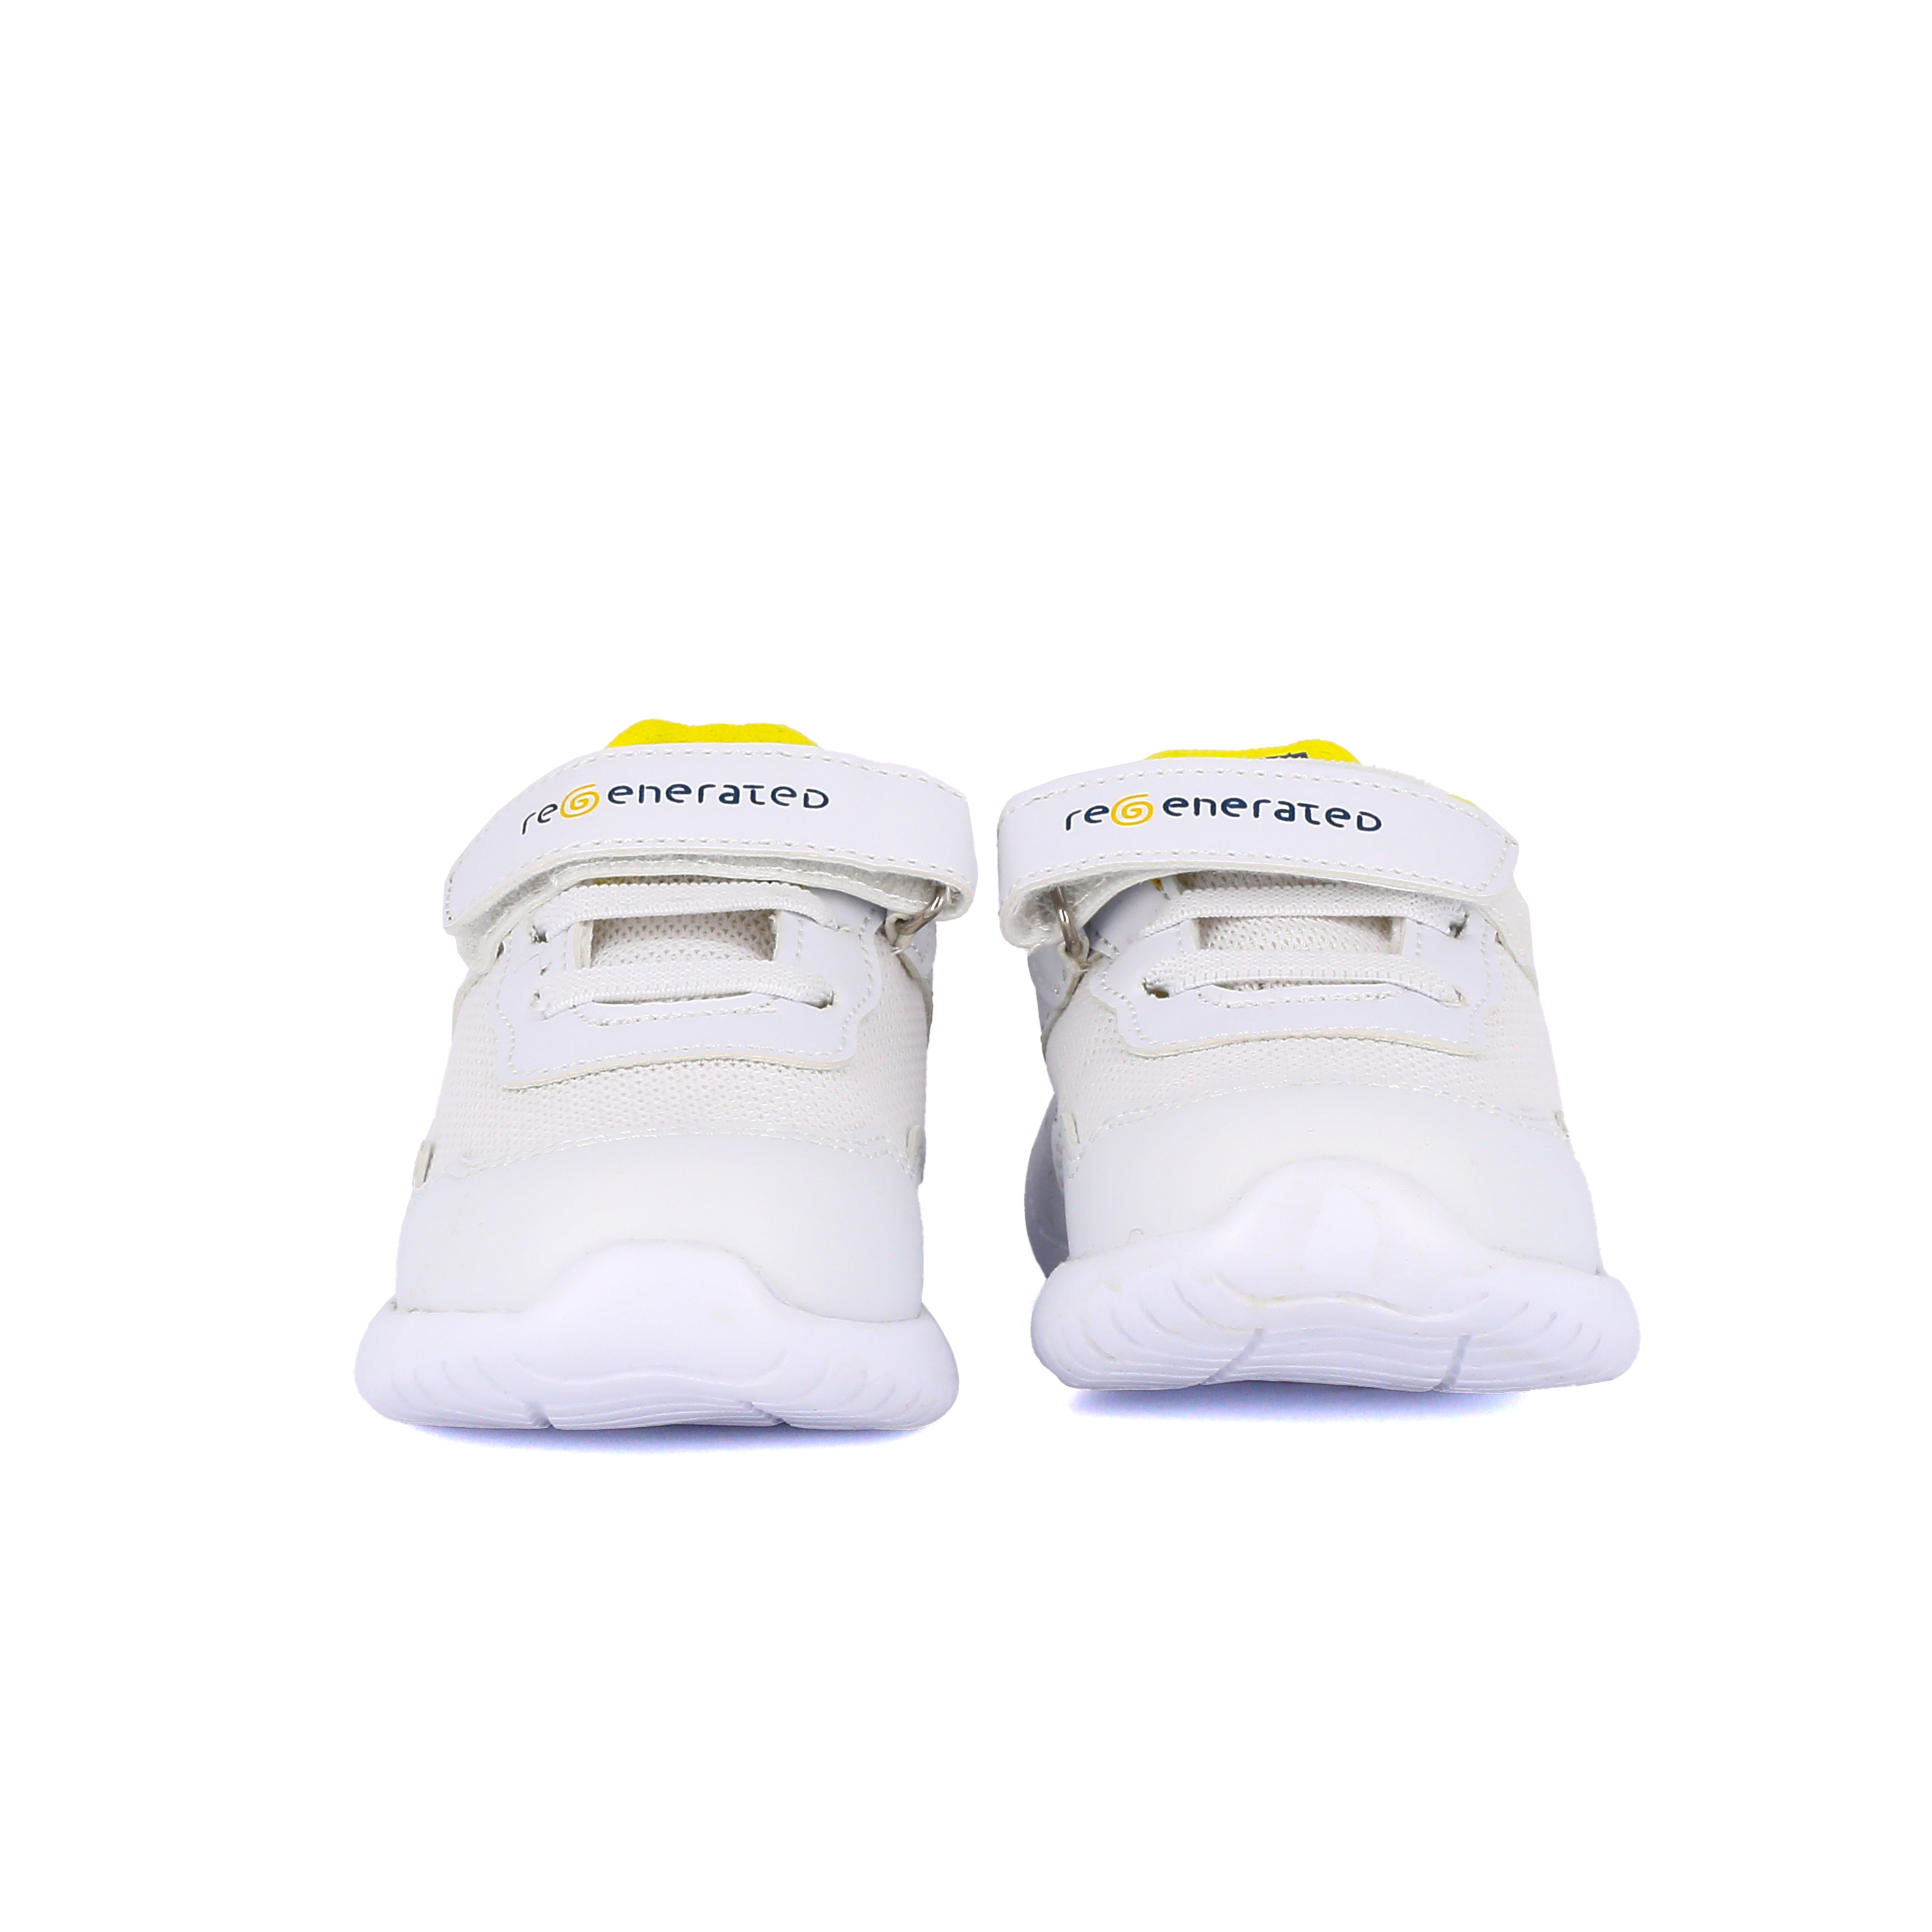 White unisex shoe